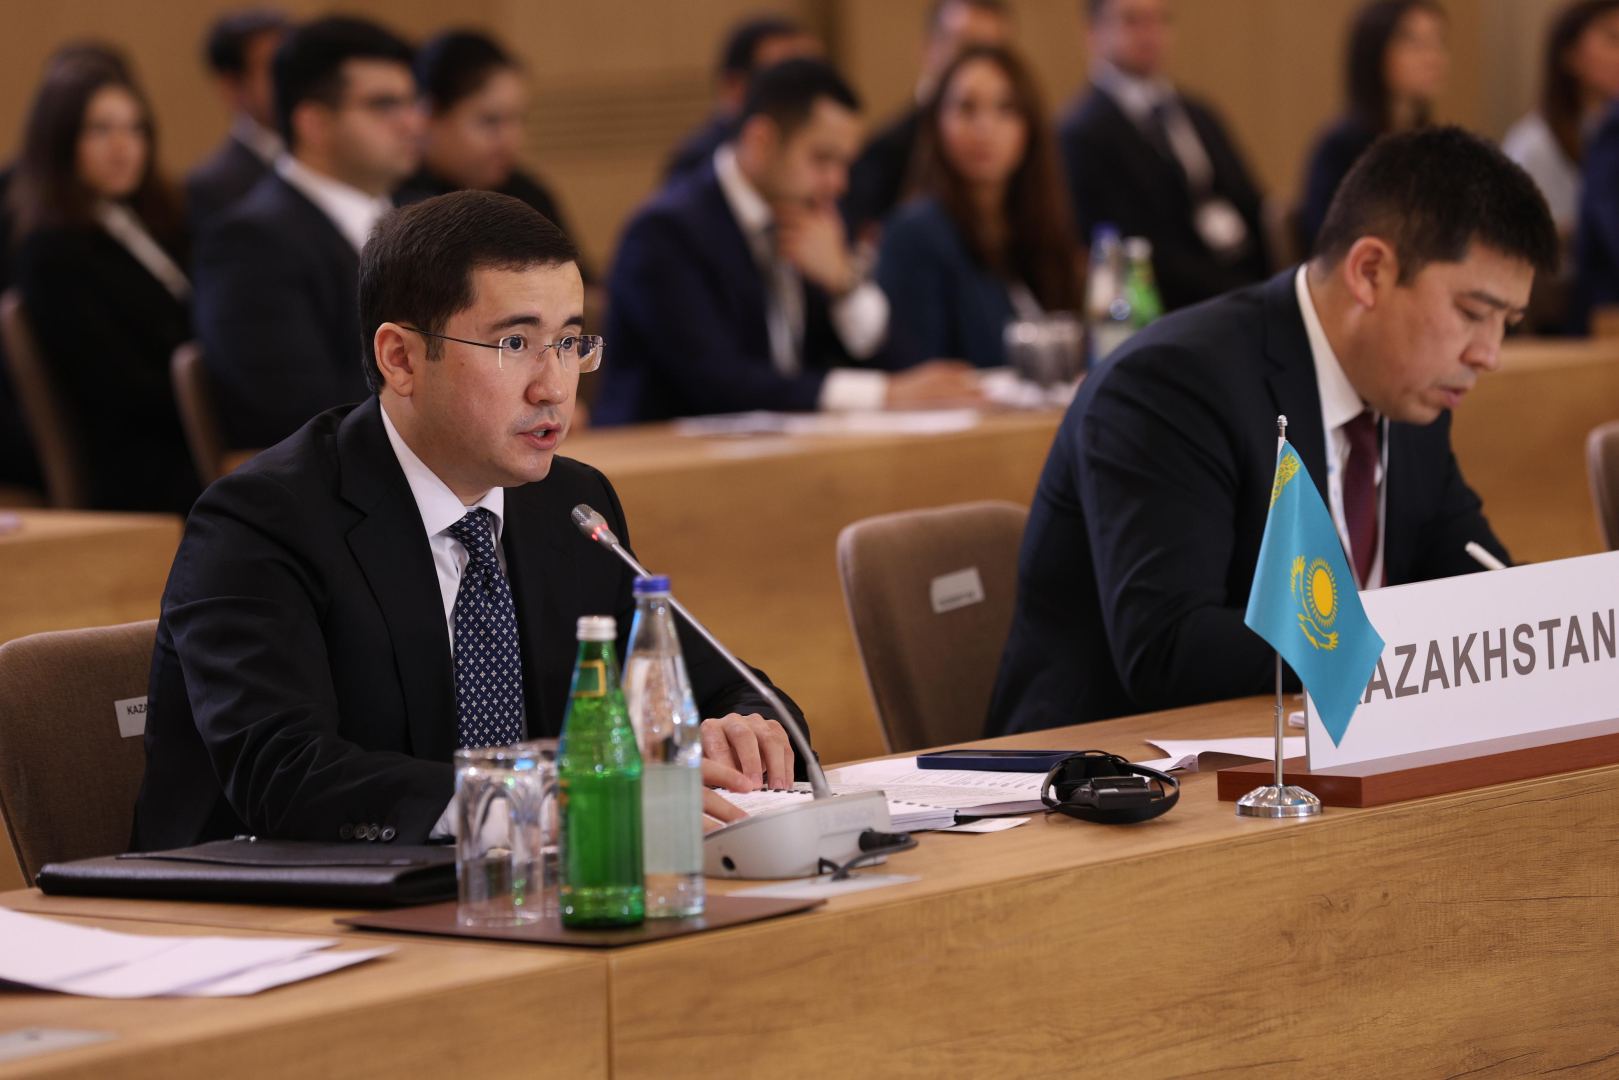 СПЕКА является важным механизмом укрепления сотрудничества для Казахстана - замминистра